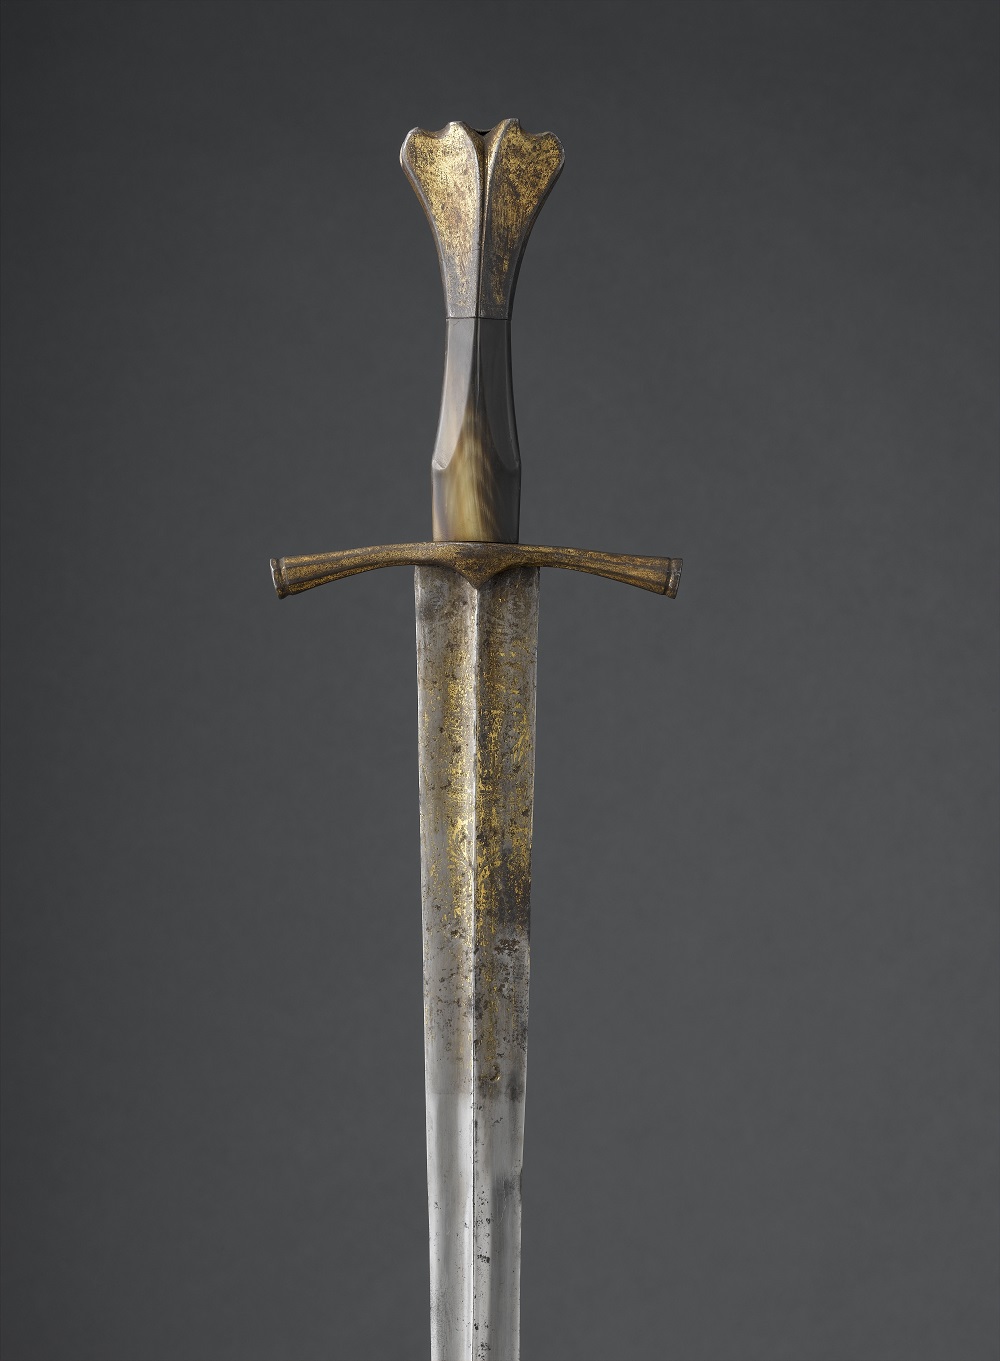 أحد السيوف الأثرية فى متحف اللوفر أبوظبى